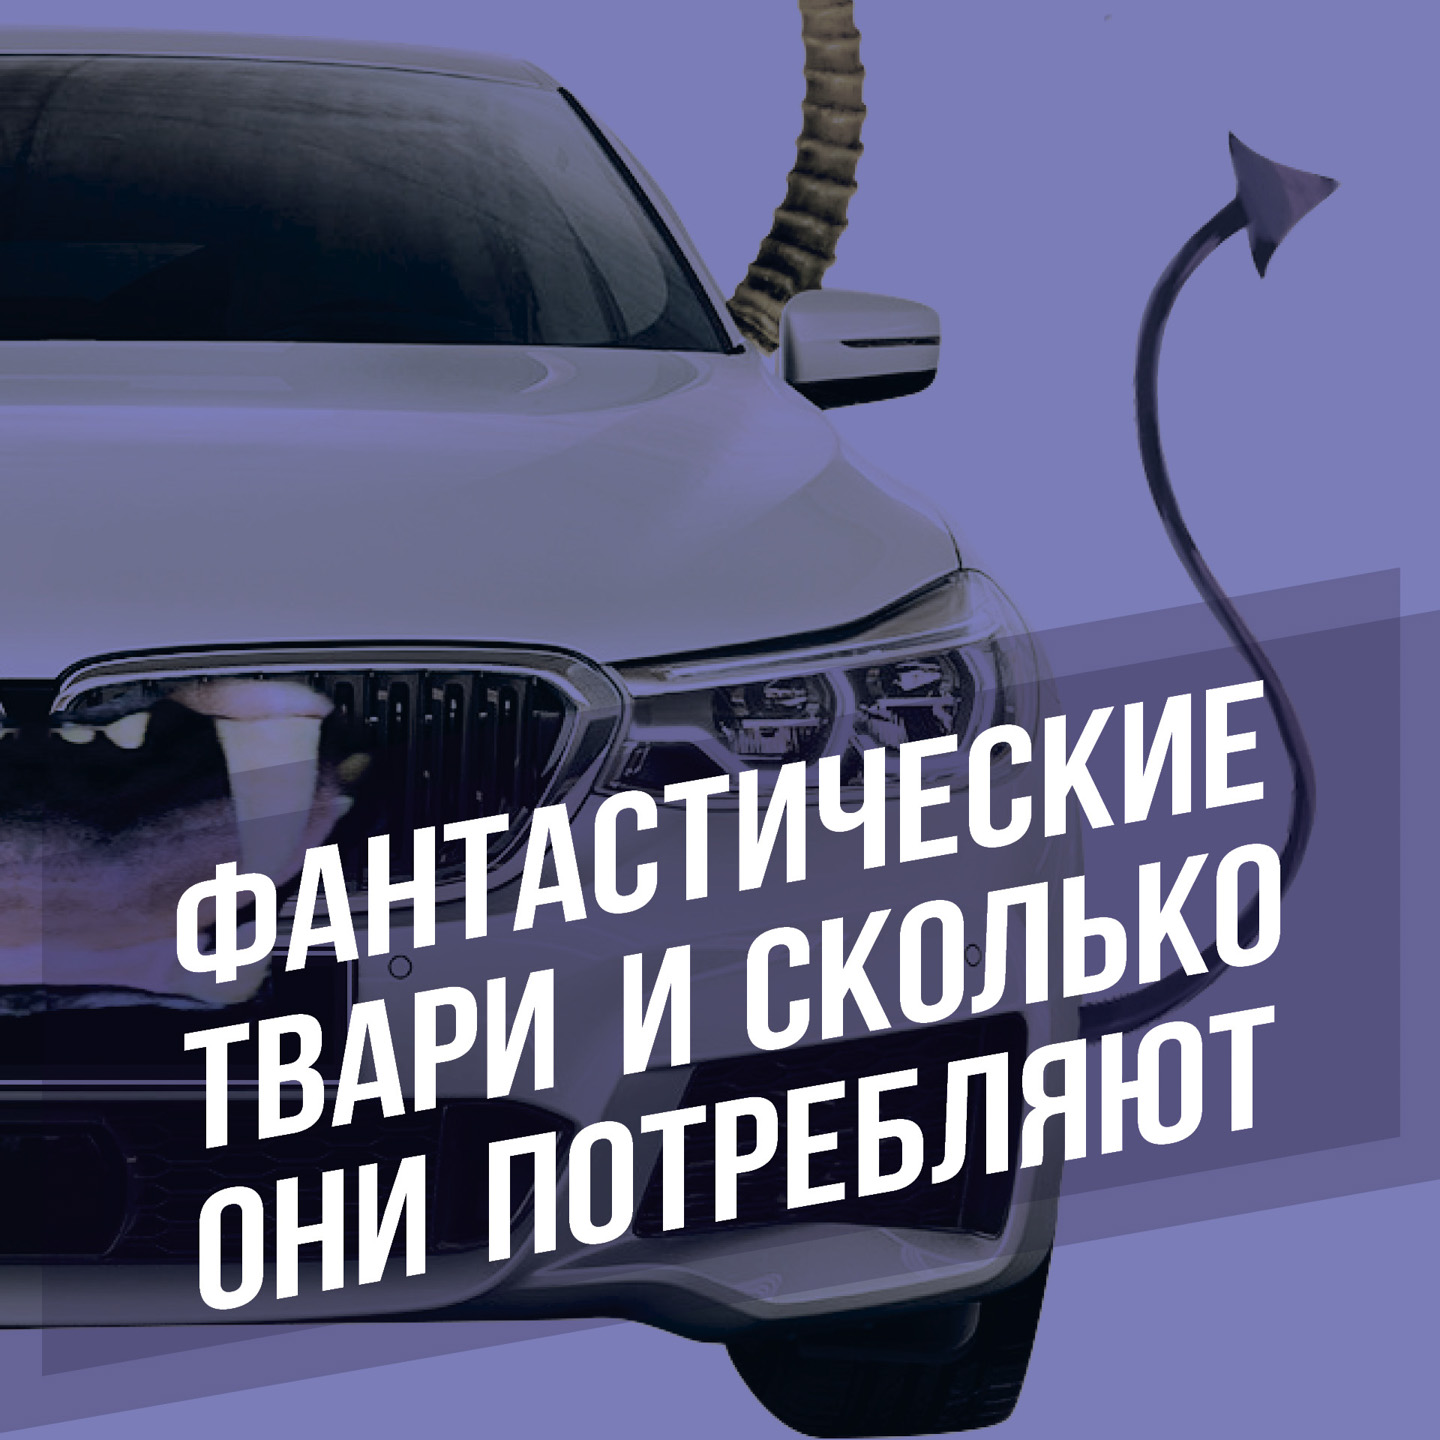 General Motors:ушел или вернулся? Все о планах автоконцерна на российском рынке.